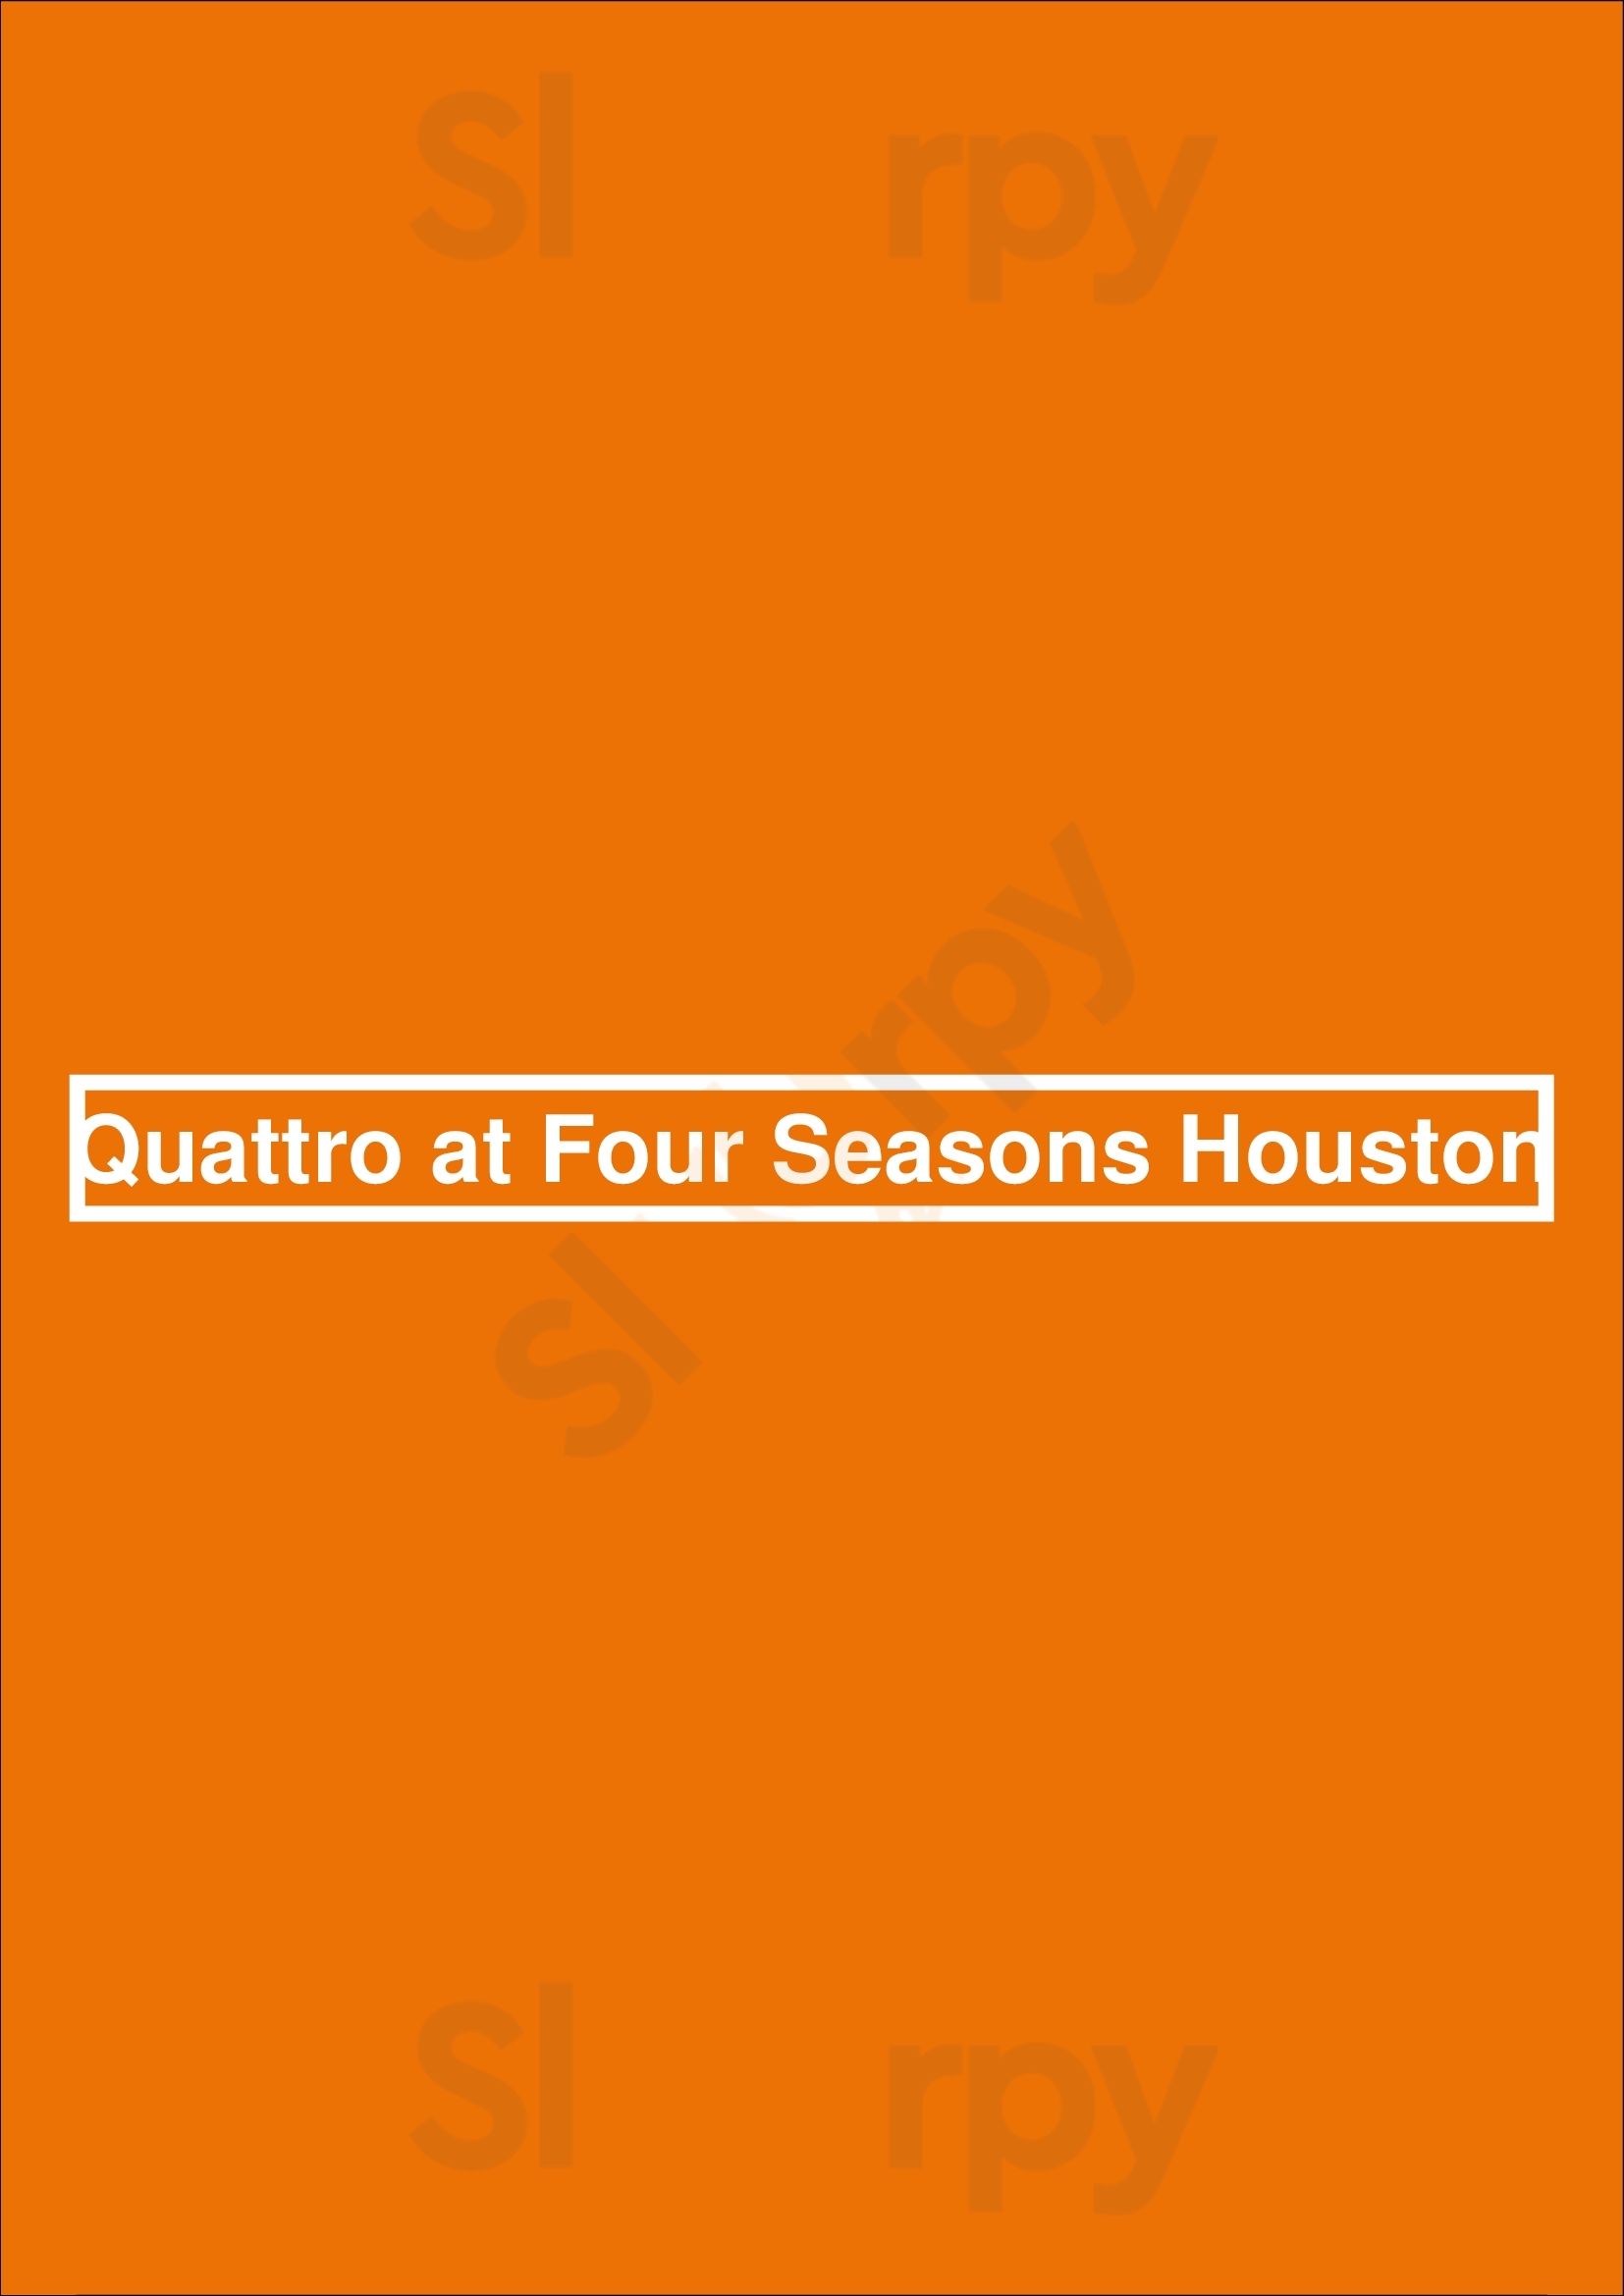 Quattro At Four Seasons Houston Houston Menu - 1